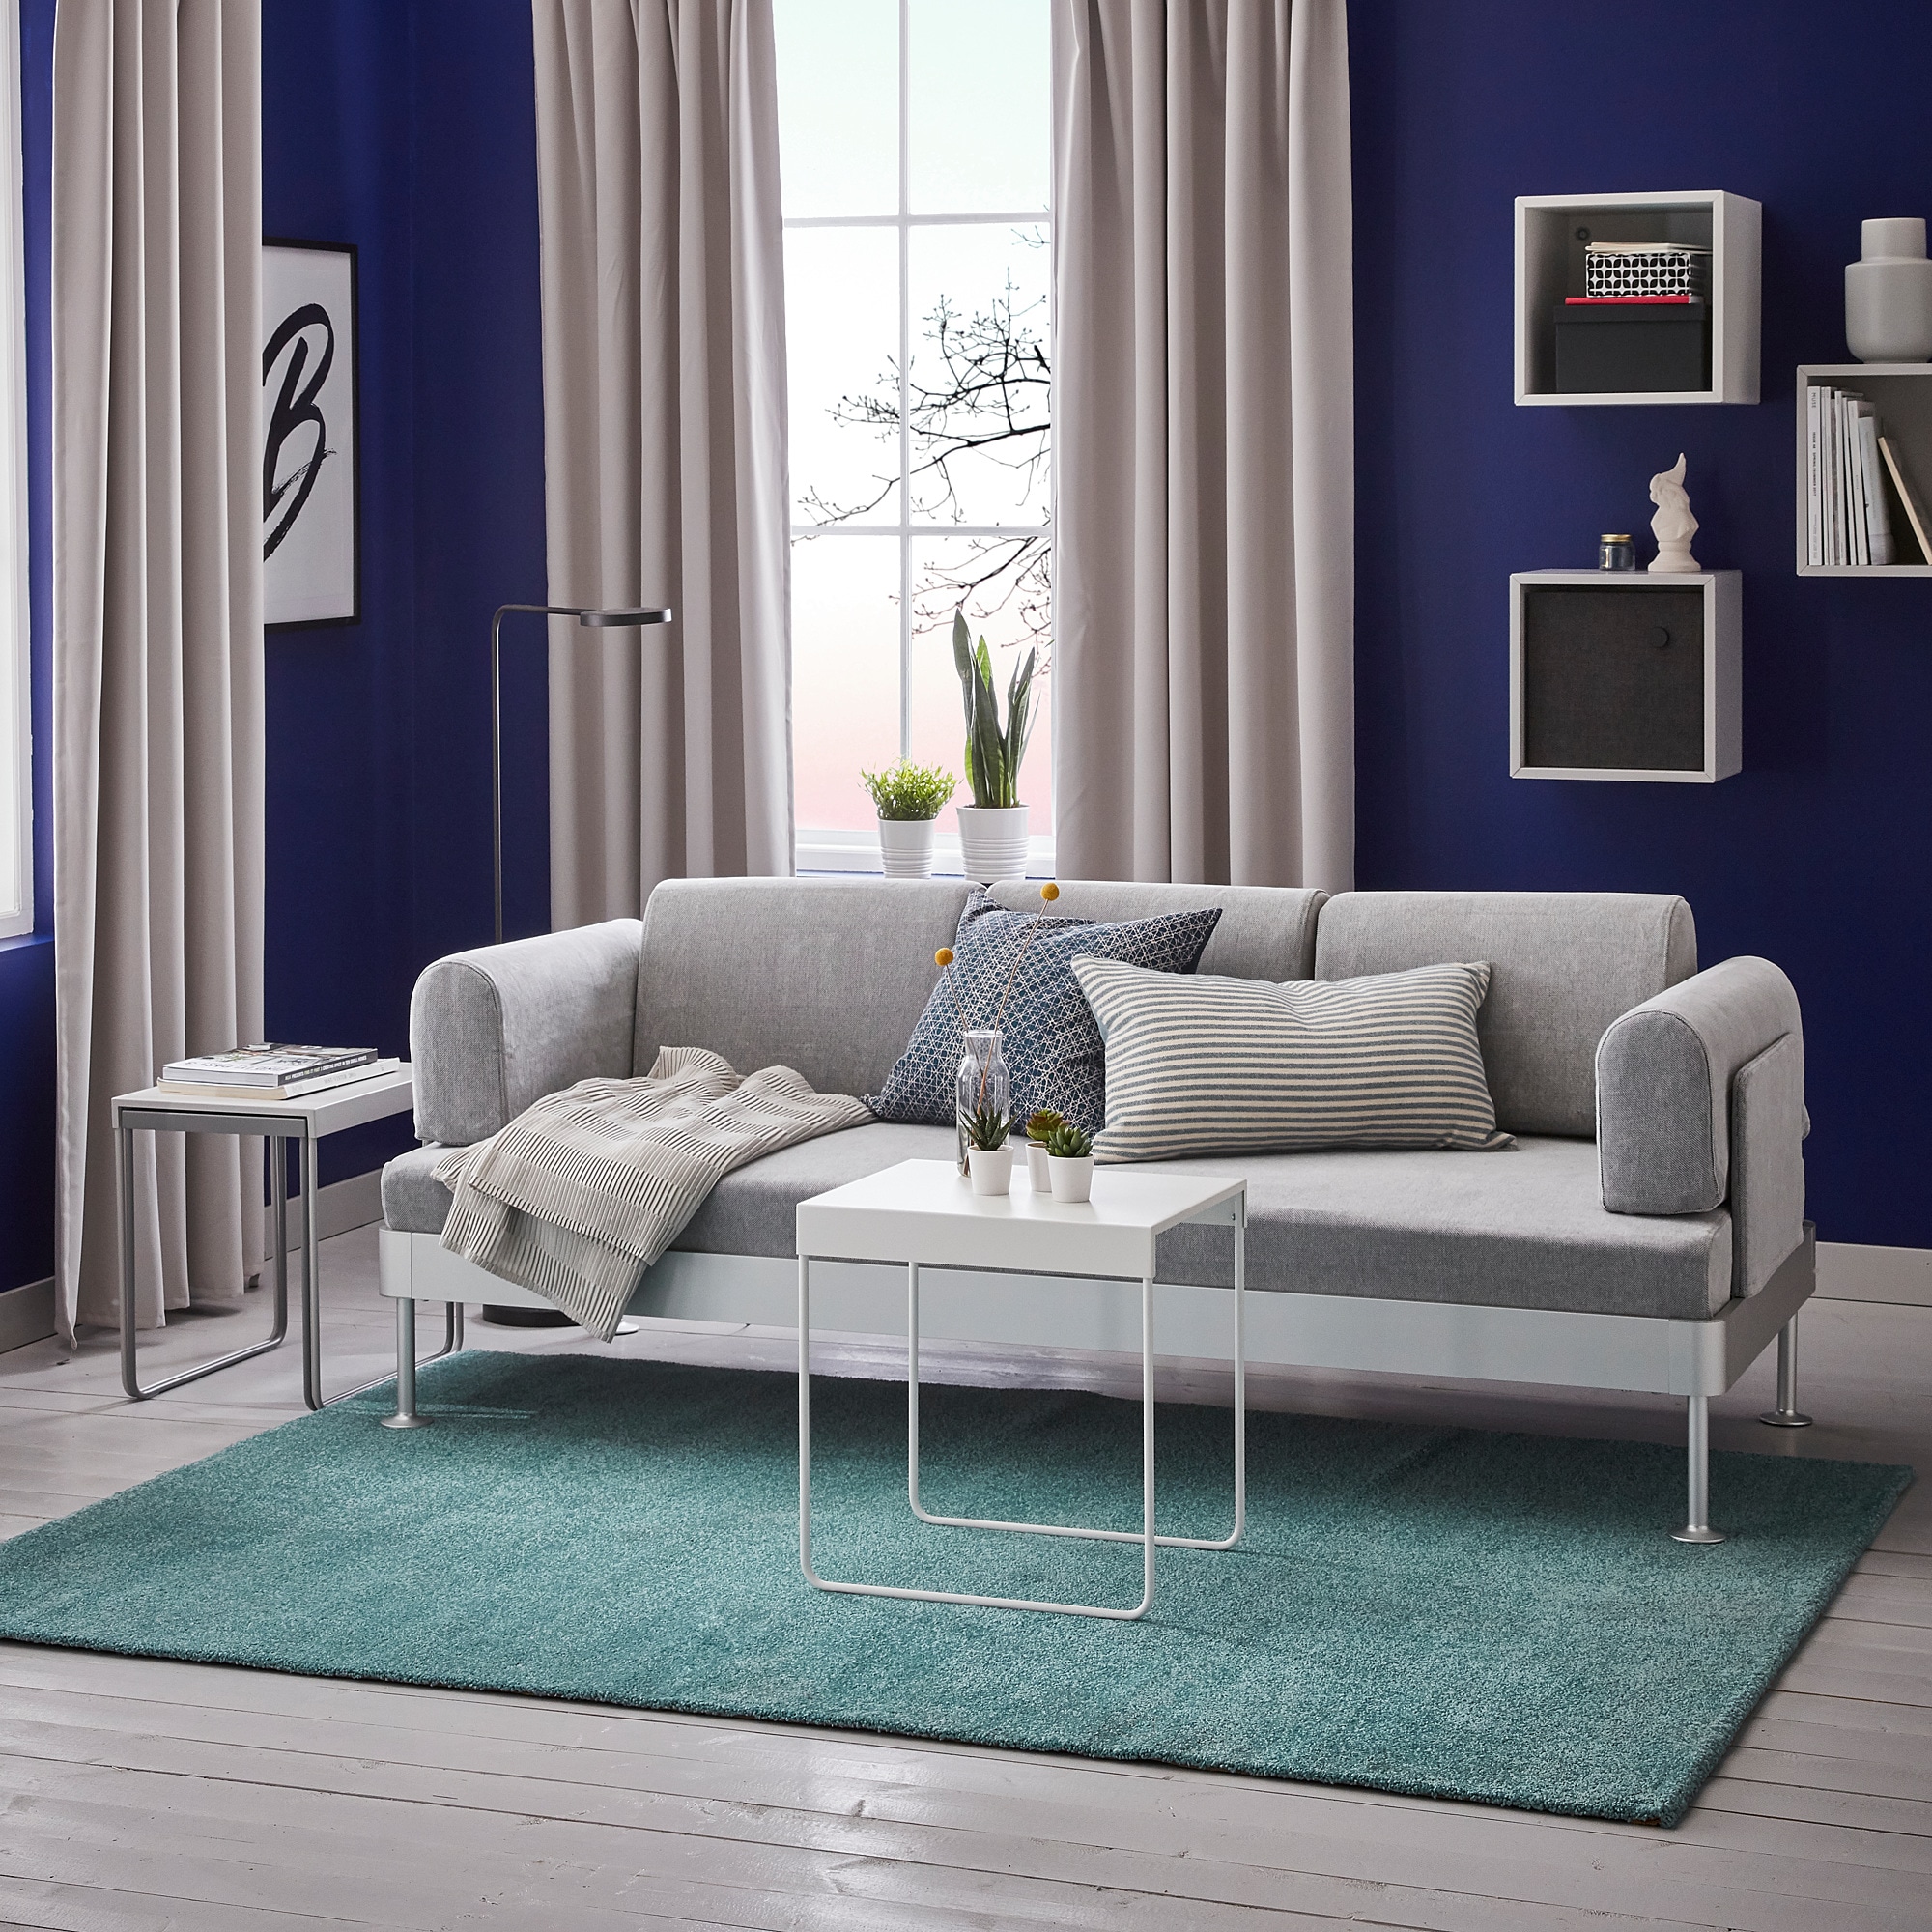 Ikeaのカーペットおすすめ人気ランキング キッズ用も モノナビ おすすめの家具 家電のランキング